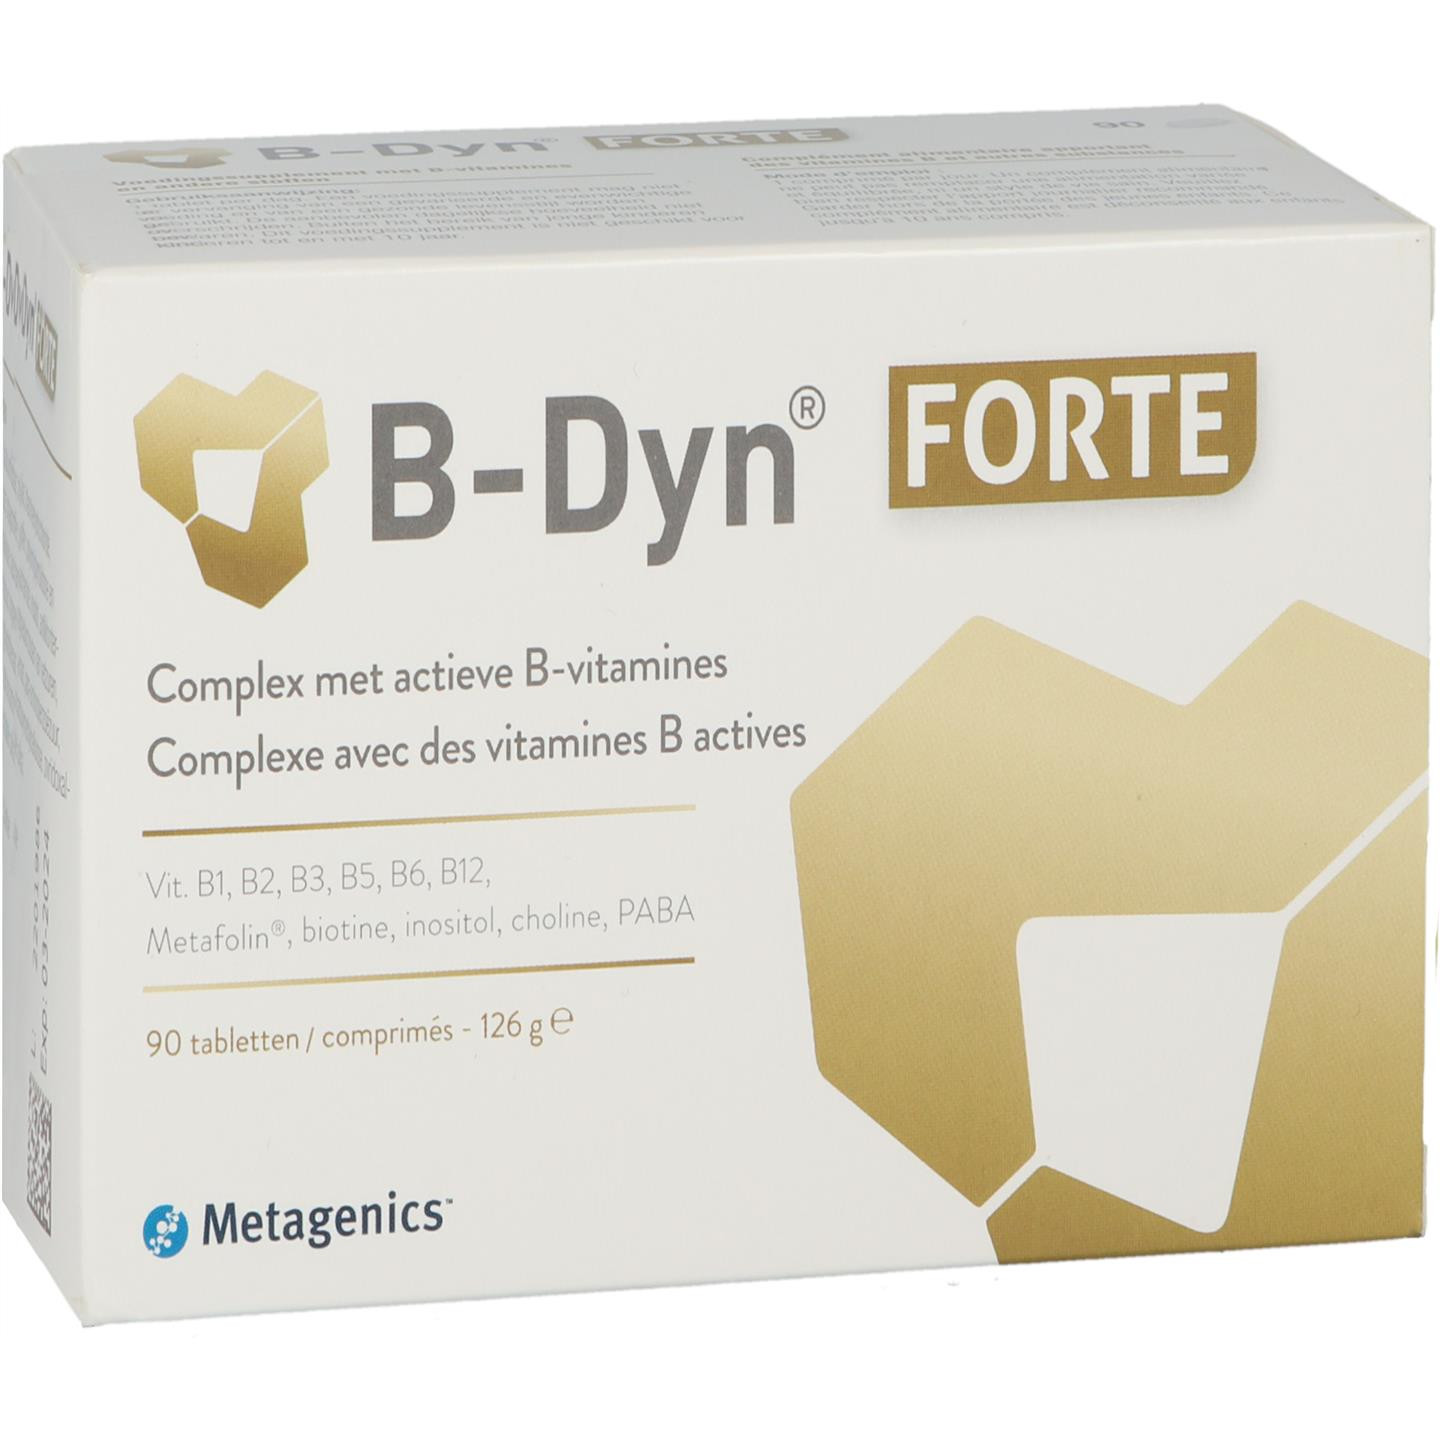 B-Dyn Forte